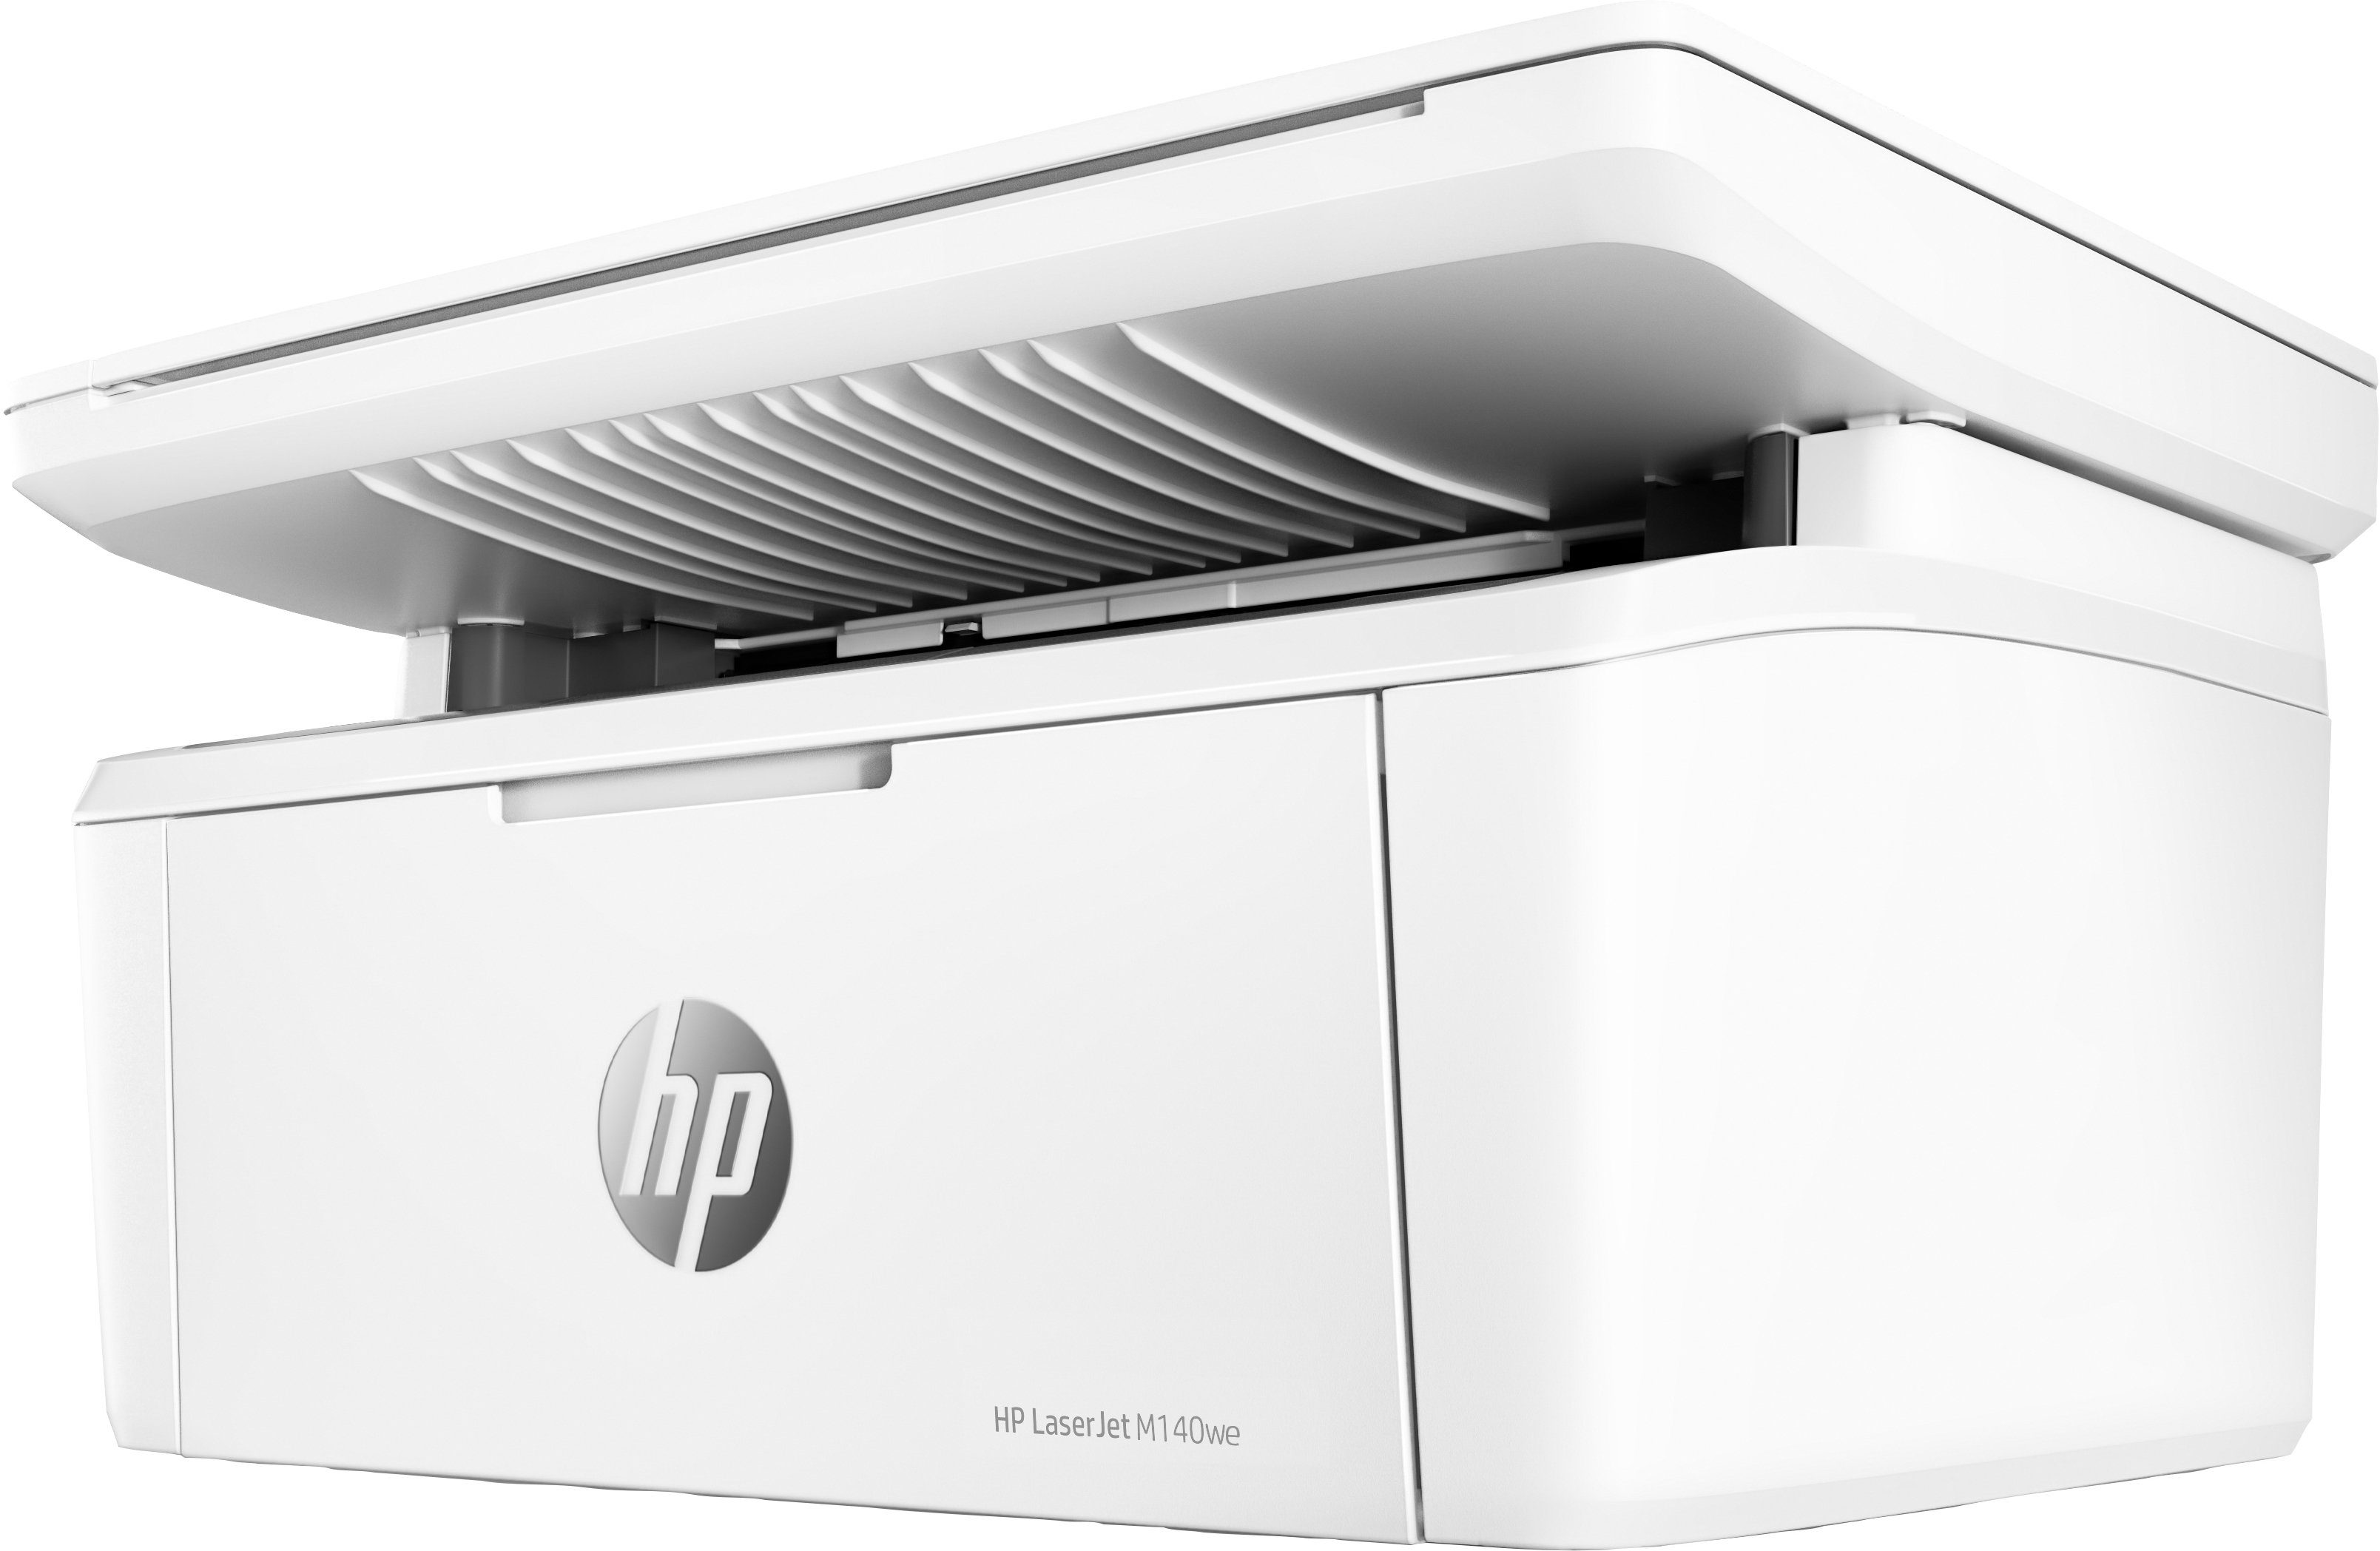 HP+ kompatibel) HP Instant Drucker WLAN M140we MFP LaserJet Multifunktionsdrucker, (Bluetooth, Ink (Wi-Fi),